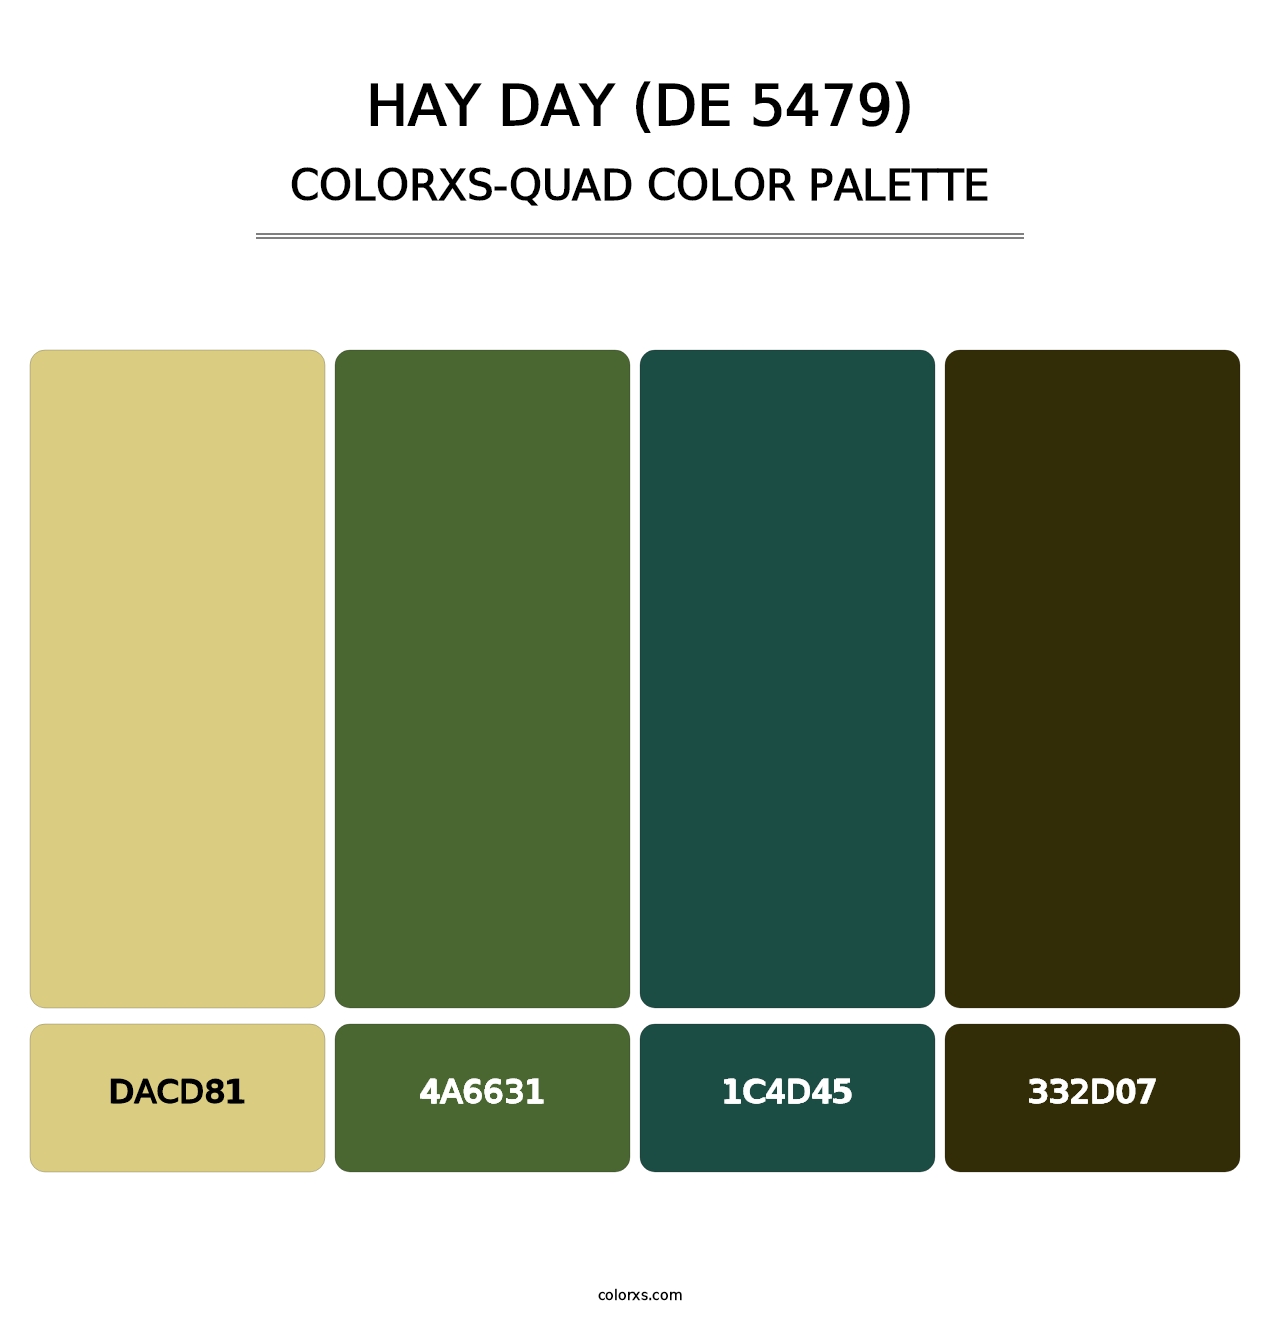 Hay Day (DE 5479) - Colorxs Quad Palette